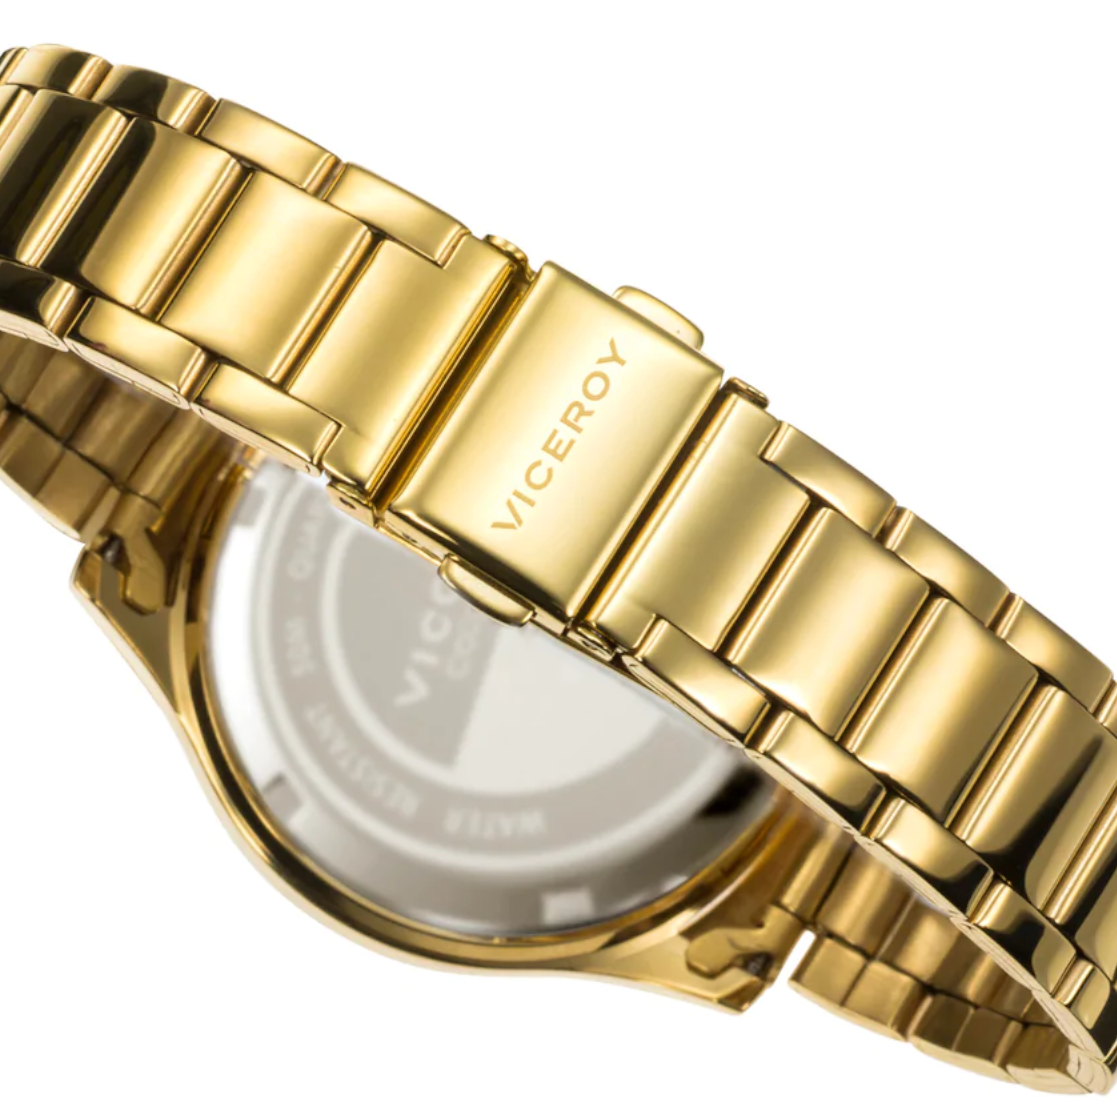 Reloj de Mujer Viceroy Chic multifunción de acero con IP dorado y brazalete